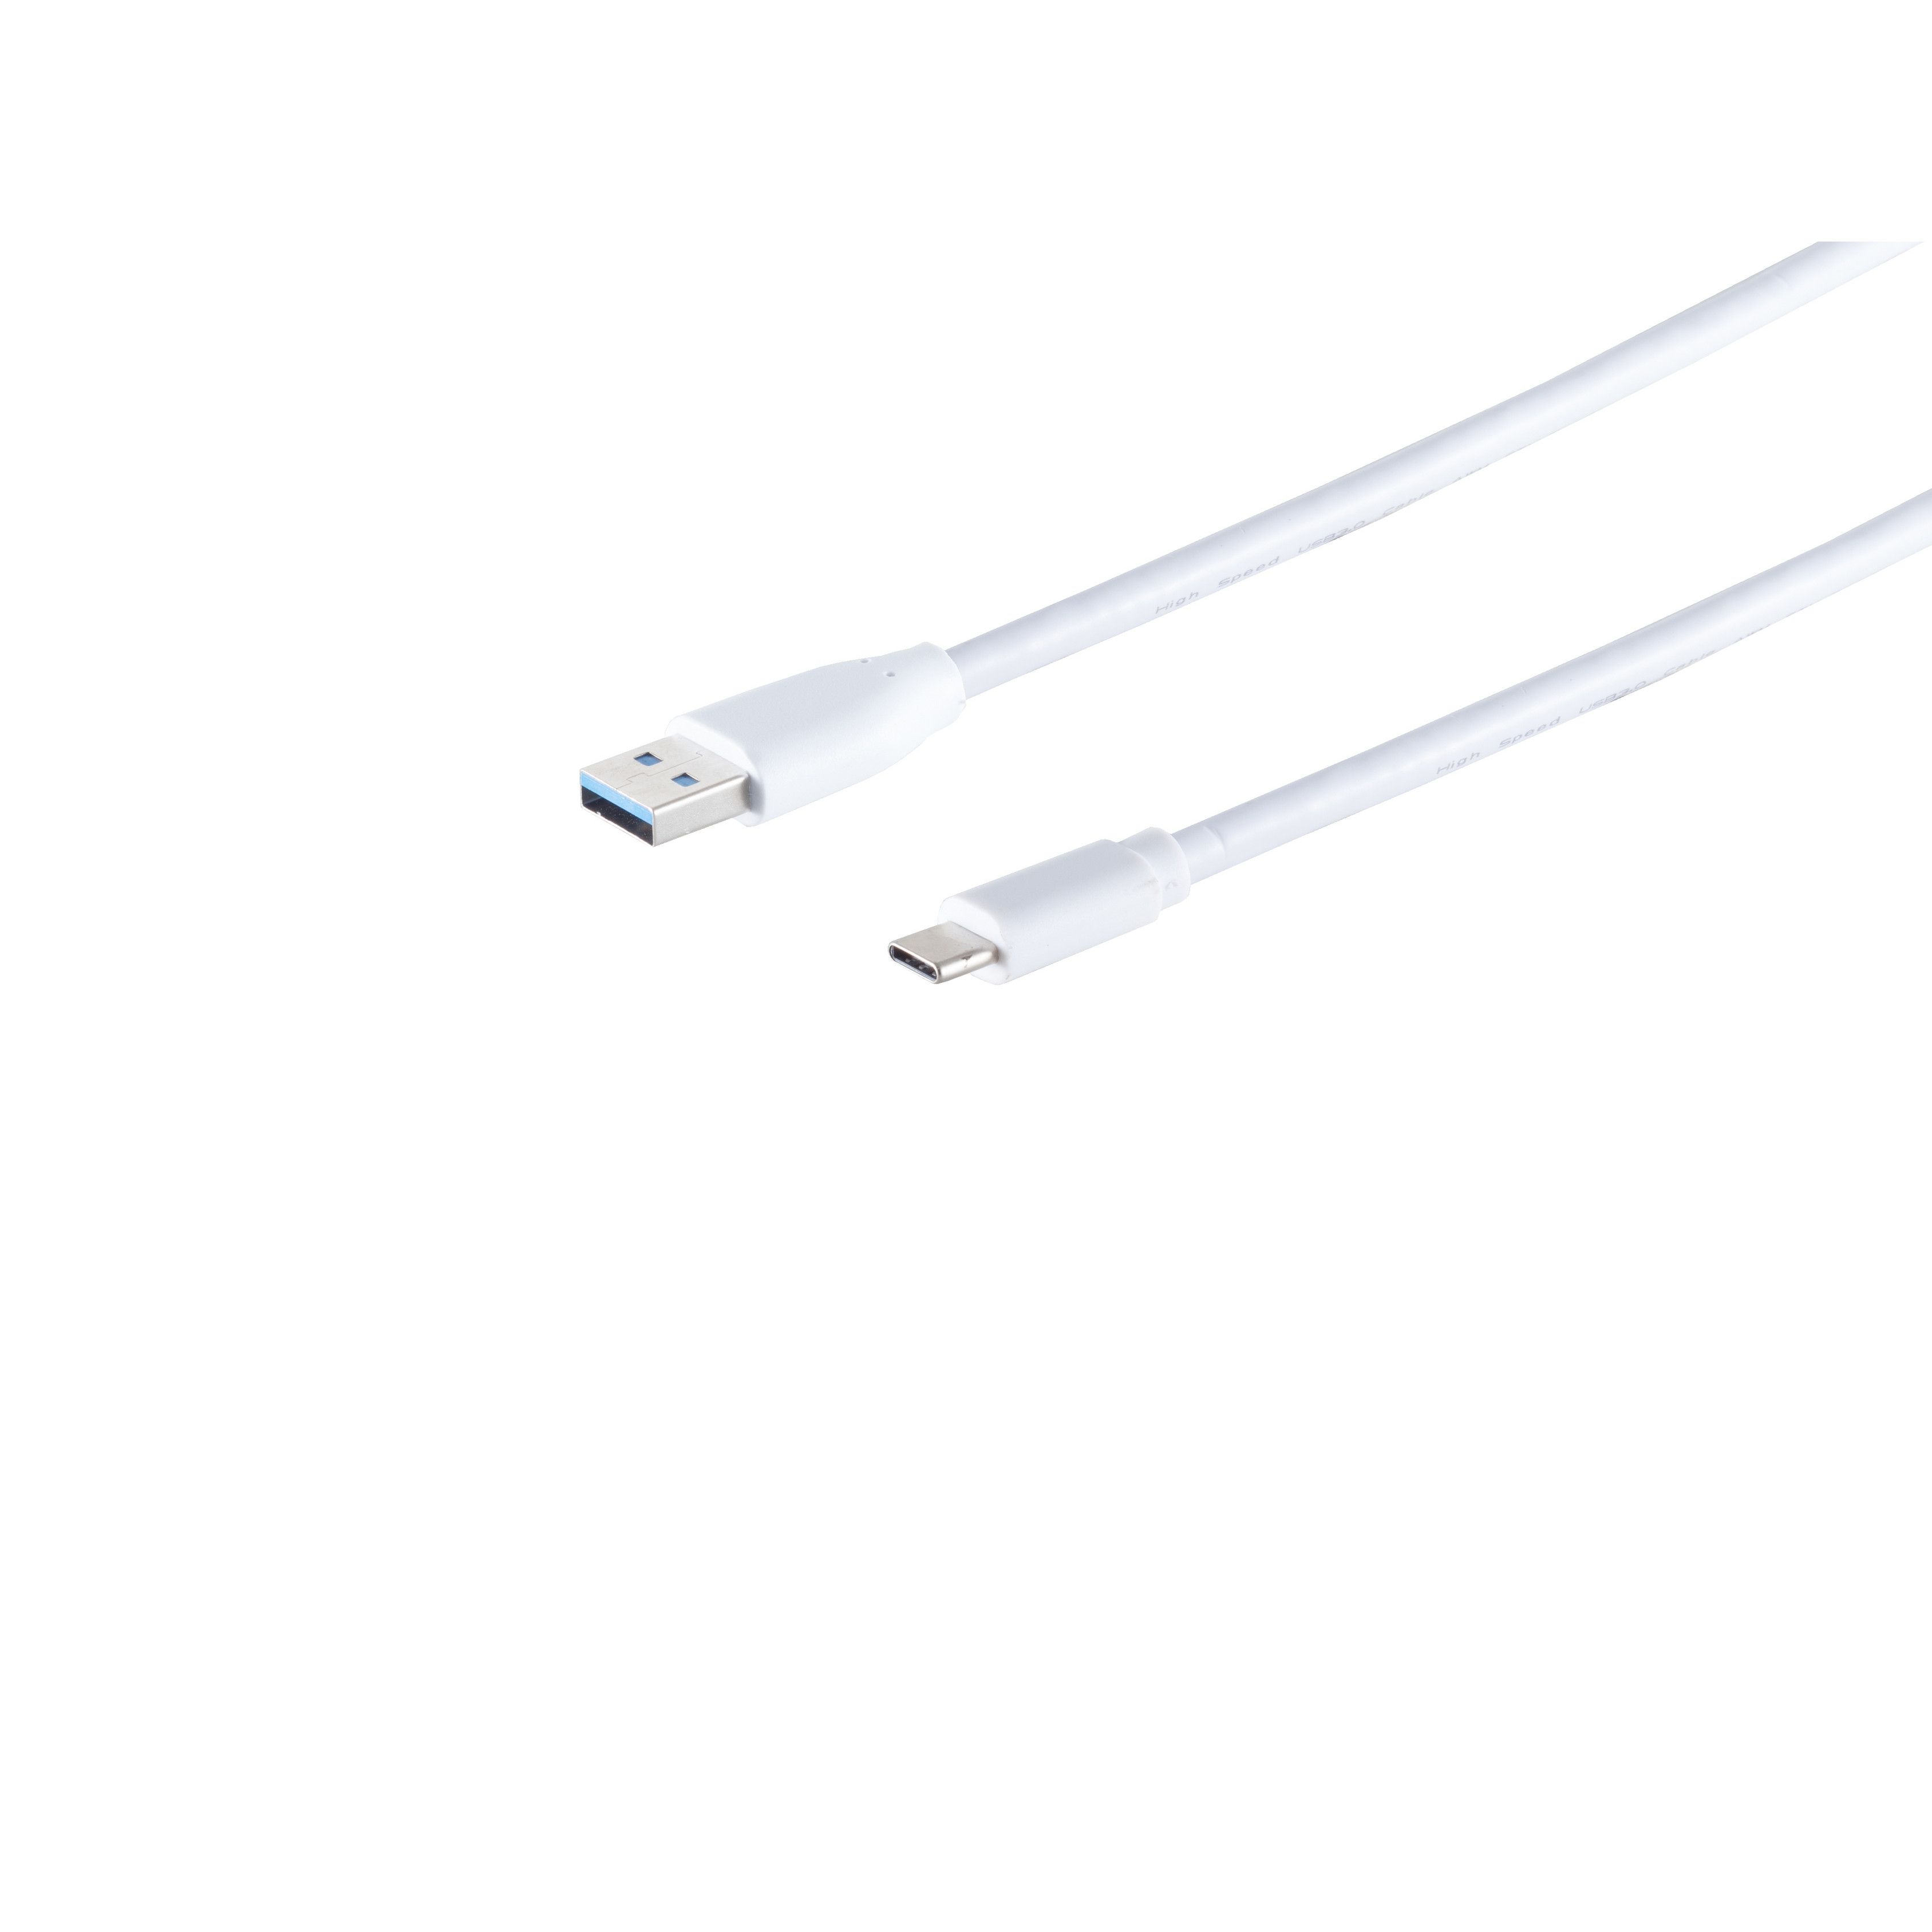 Stecker-USB USB 3.1C Kabel Stecker weiß 3.0 1,8m A USB KABELBUDE Kabel